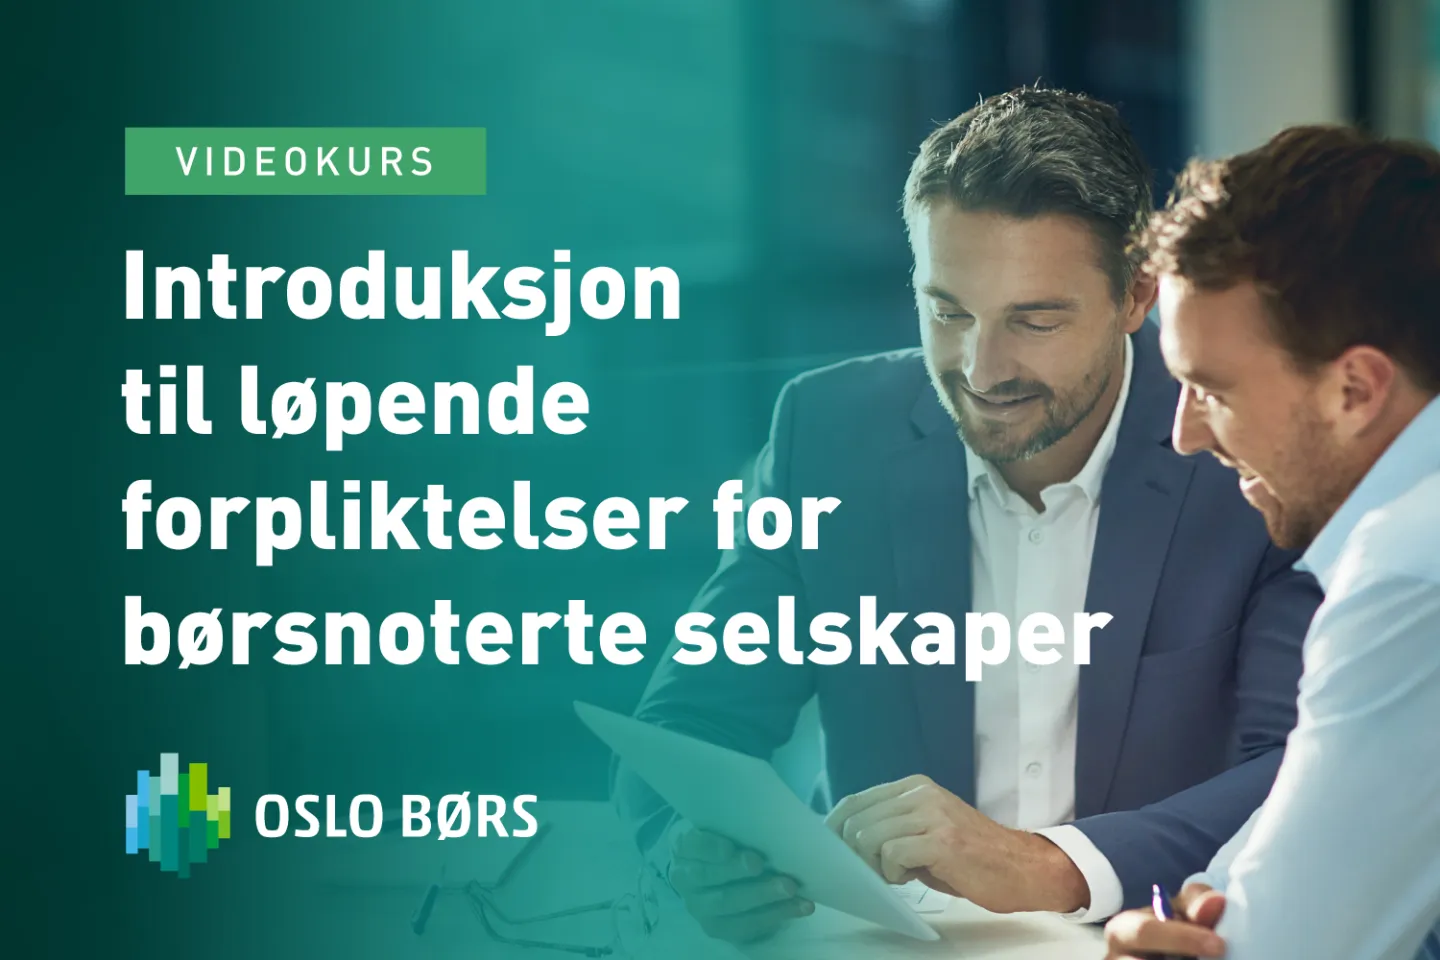 løpende forpliktelser for børsnoterte selskaper - Oslo Bors